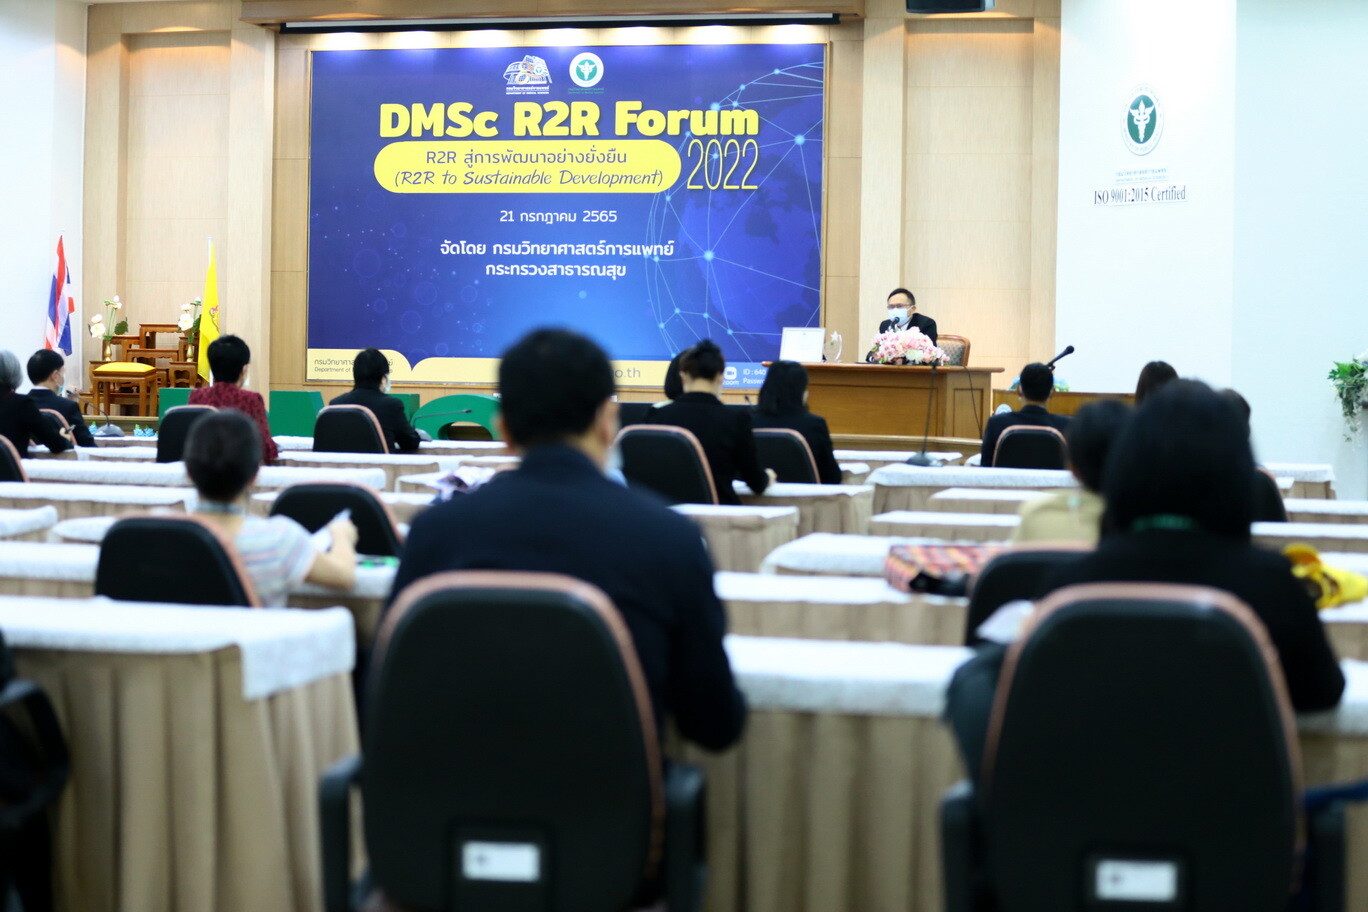 กรมวิทย์ฯ จัดงานมหกรรม DMSc R2R Forum 2022 : R2R สู่การพัฒนาอย่างยั่งยืน